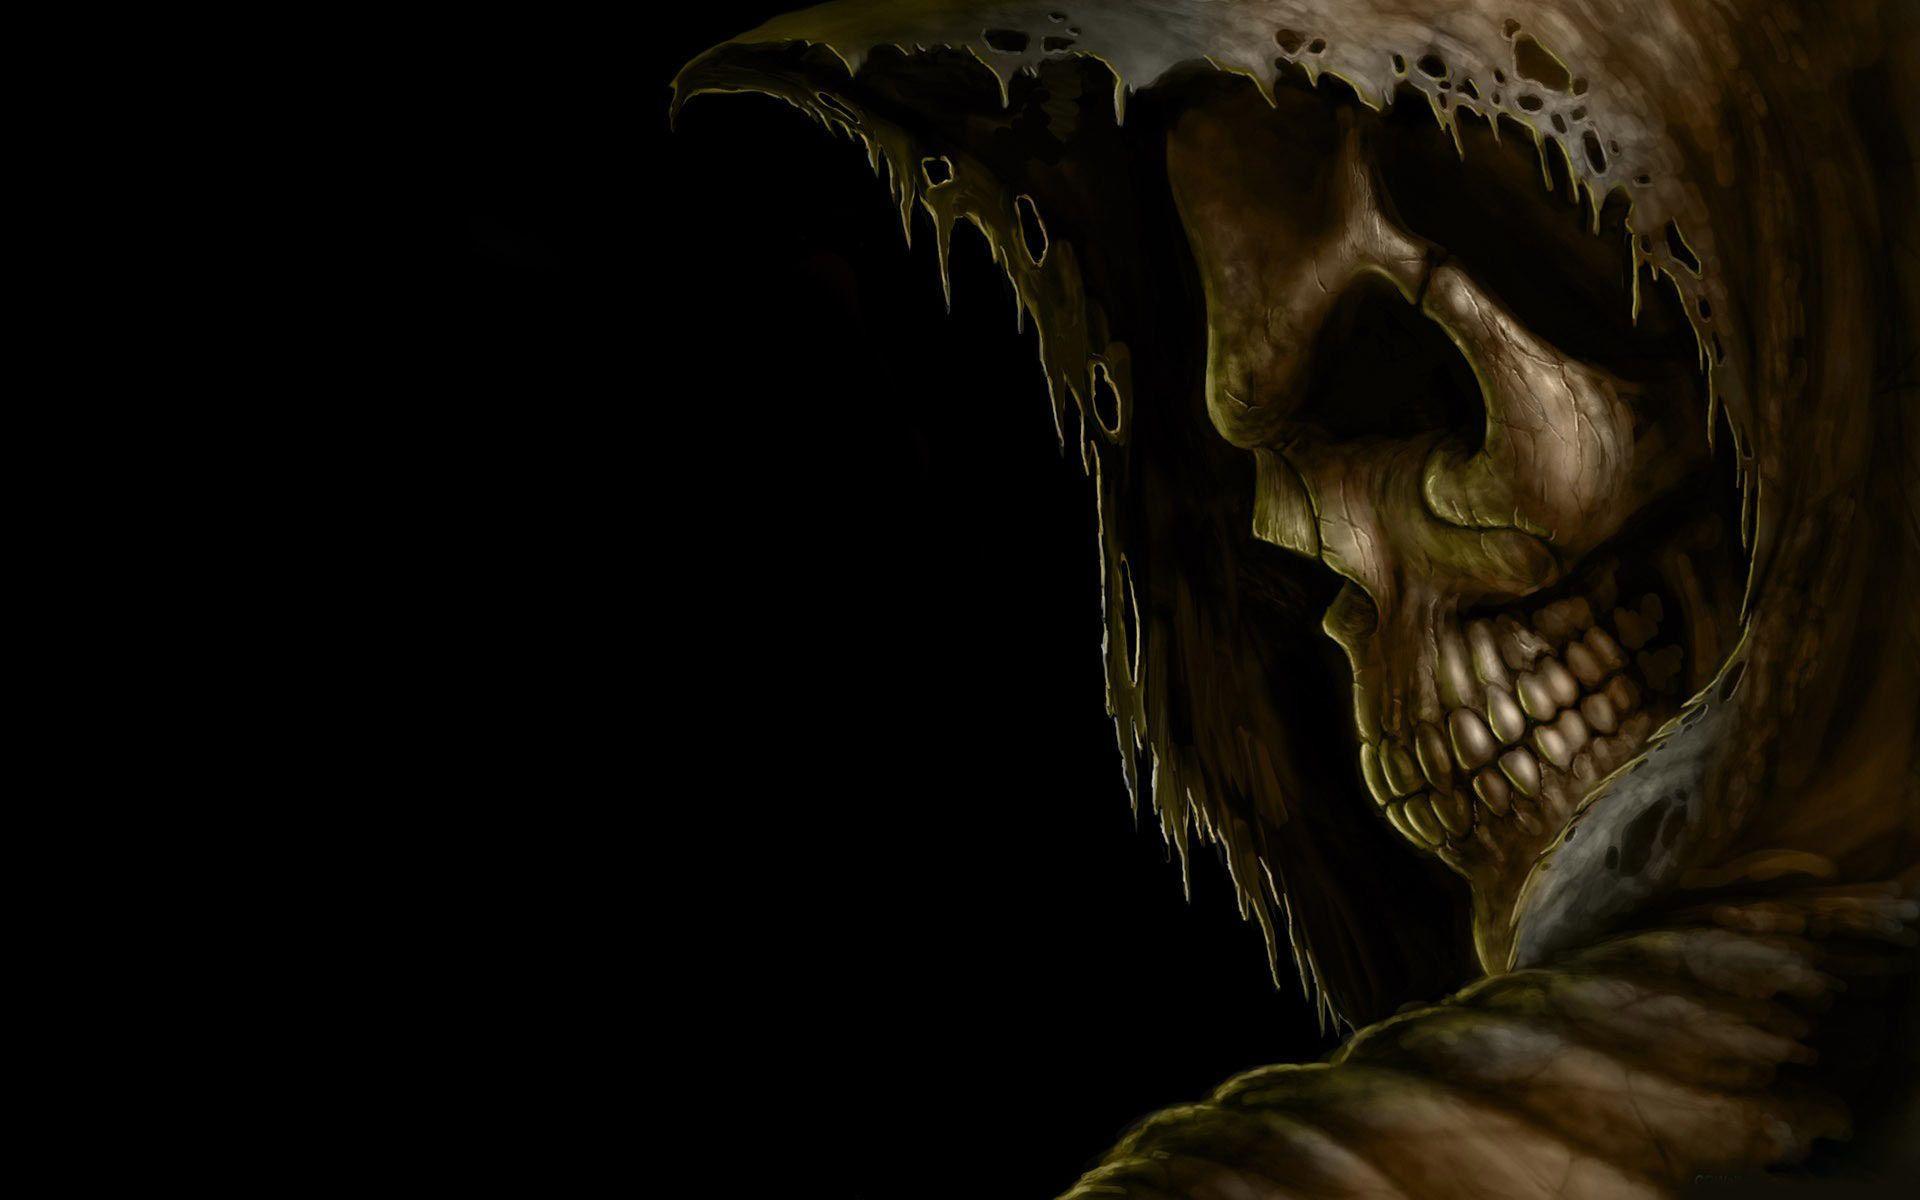 Grim reaper death dark skull hood eyes evil scary spooky creepy